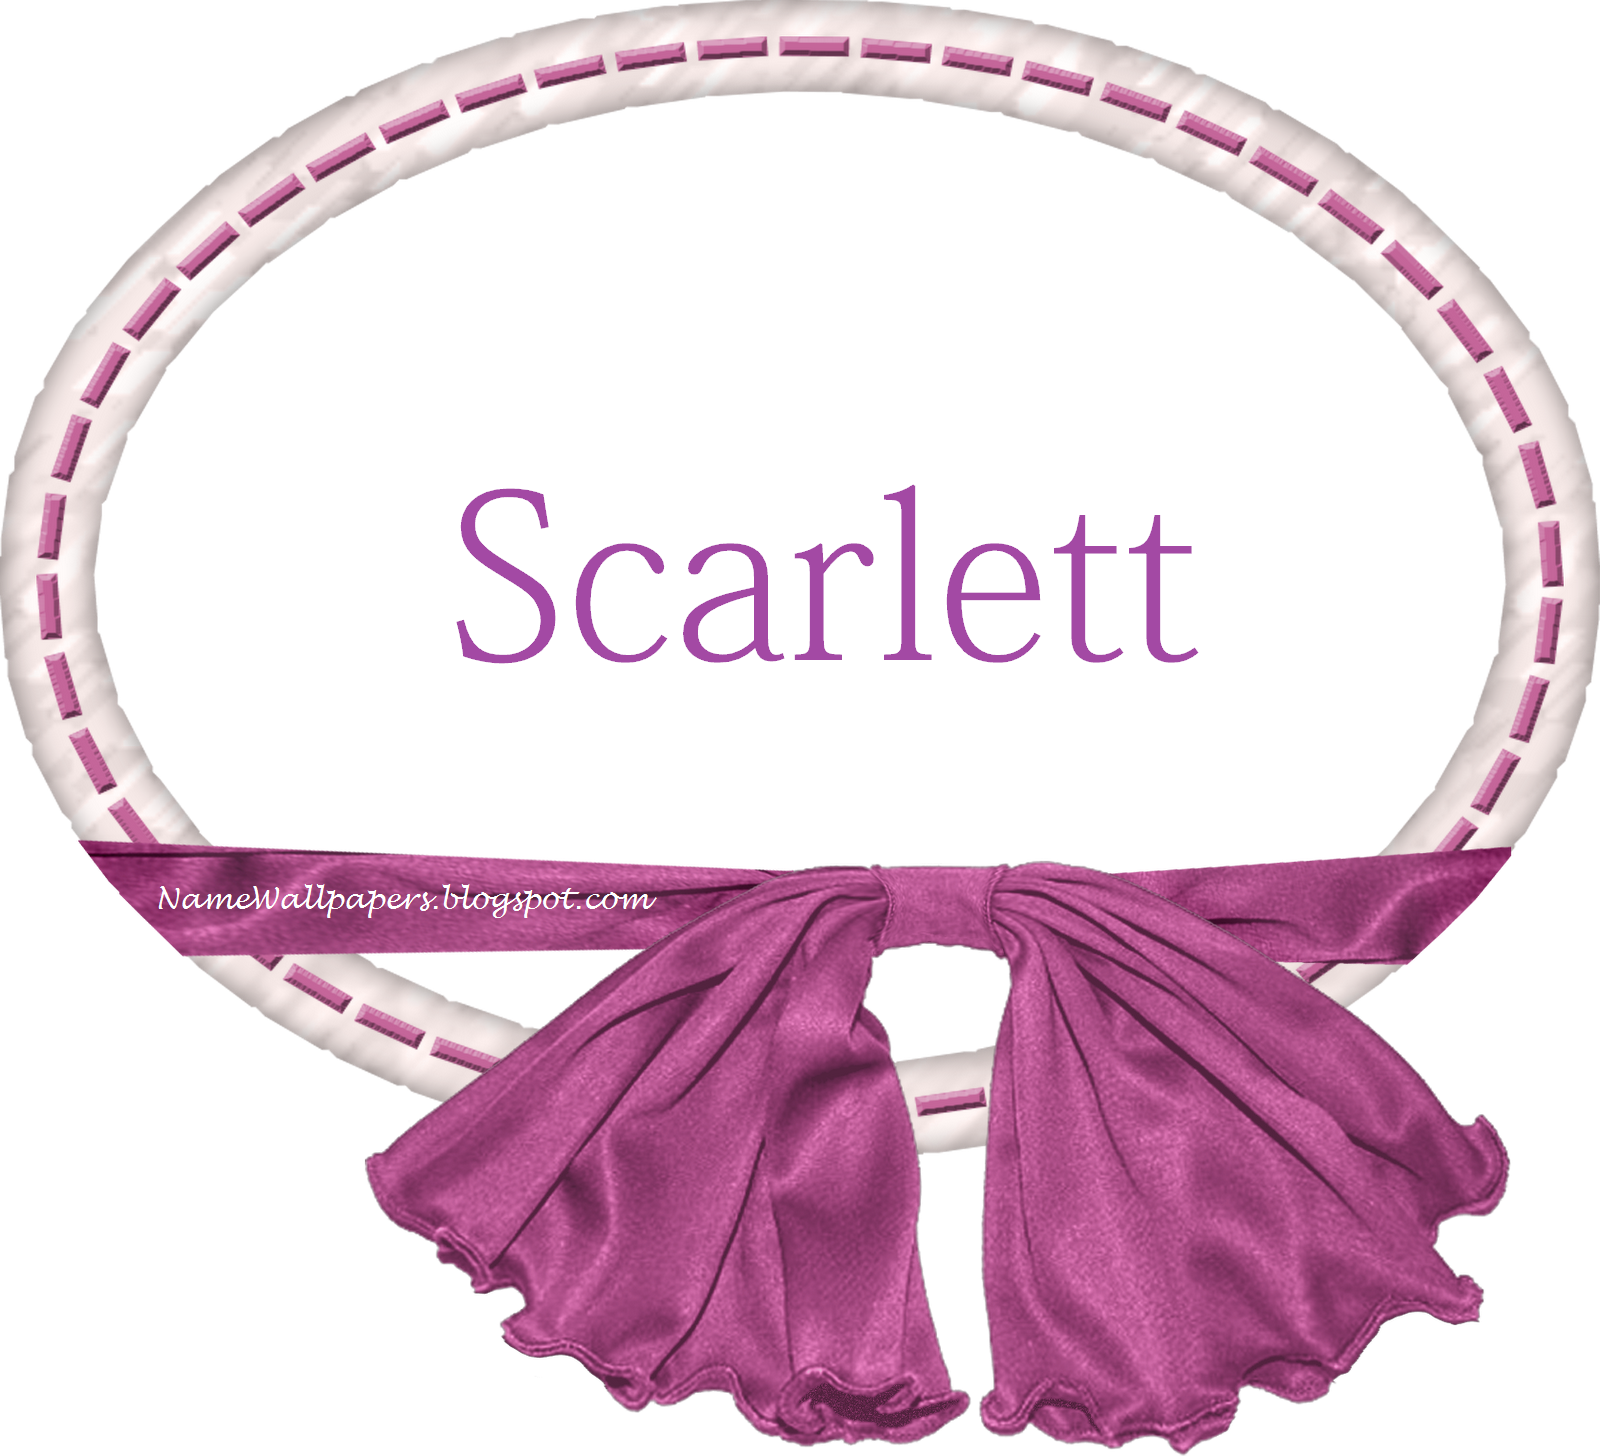 Scarlett Name Wallpapers Scarlett ~ Name Wallpaper Urdu ...